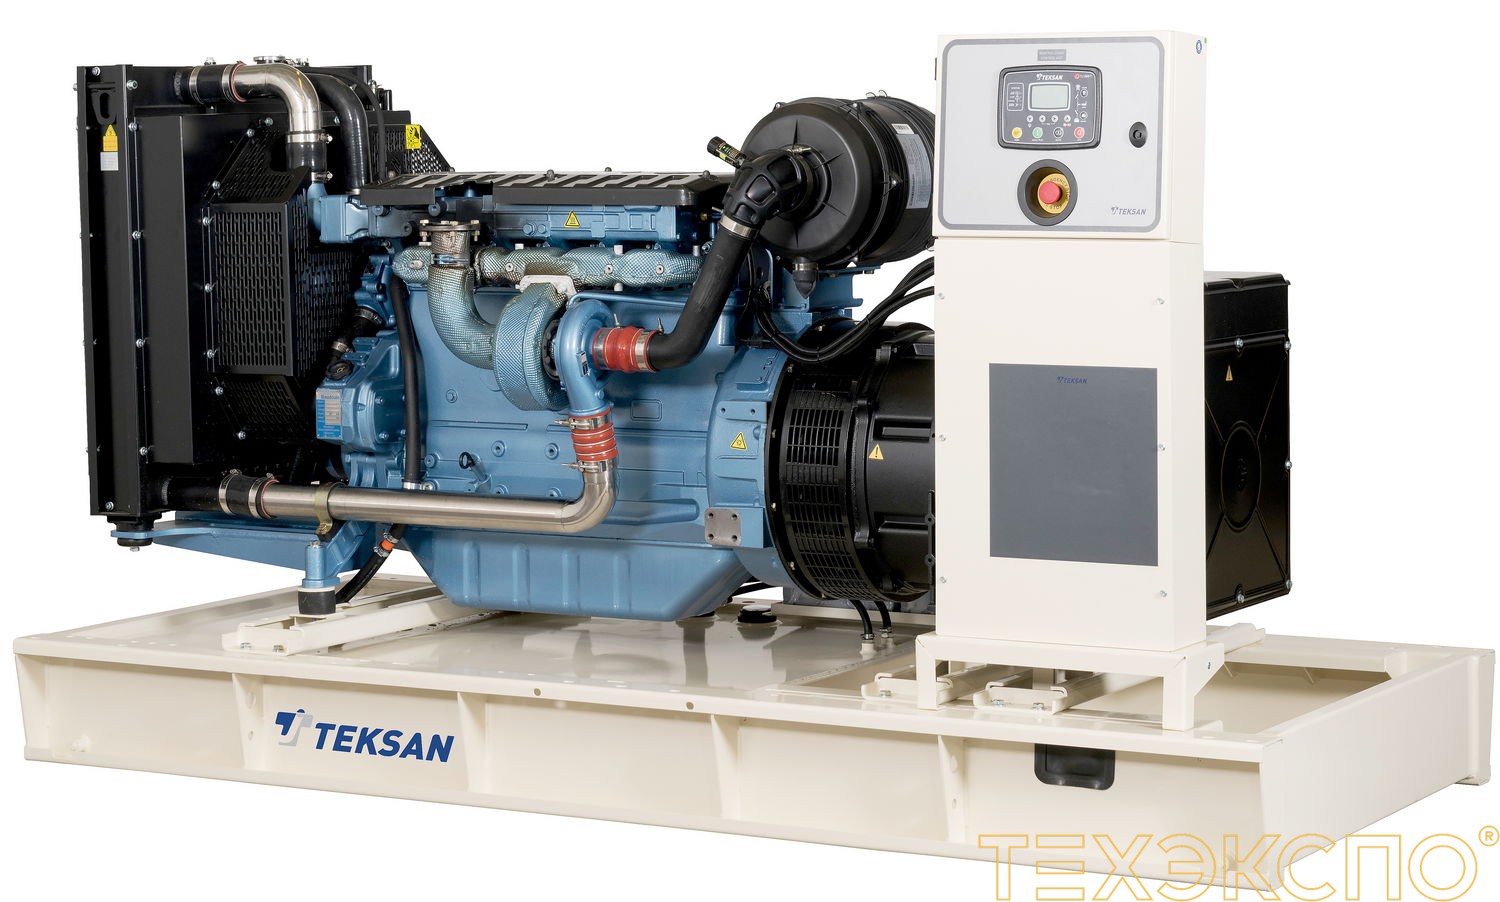 Teksan TJ900BD - ДЭС 666 кВт в Санкт-Петербурге за 10 956 708 рублей | Дизельная электростанция в Техэкспо